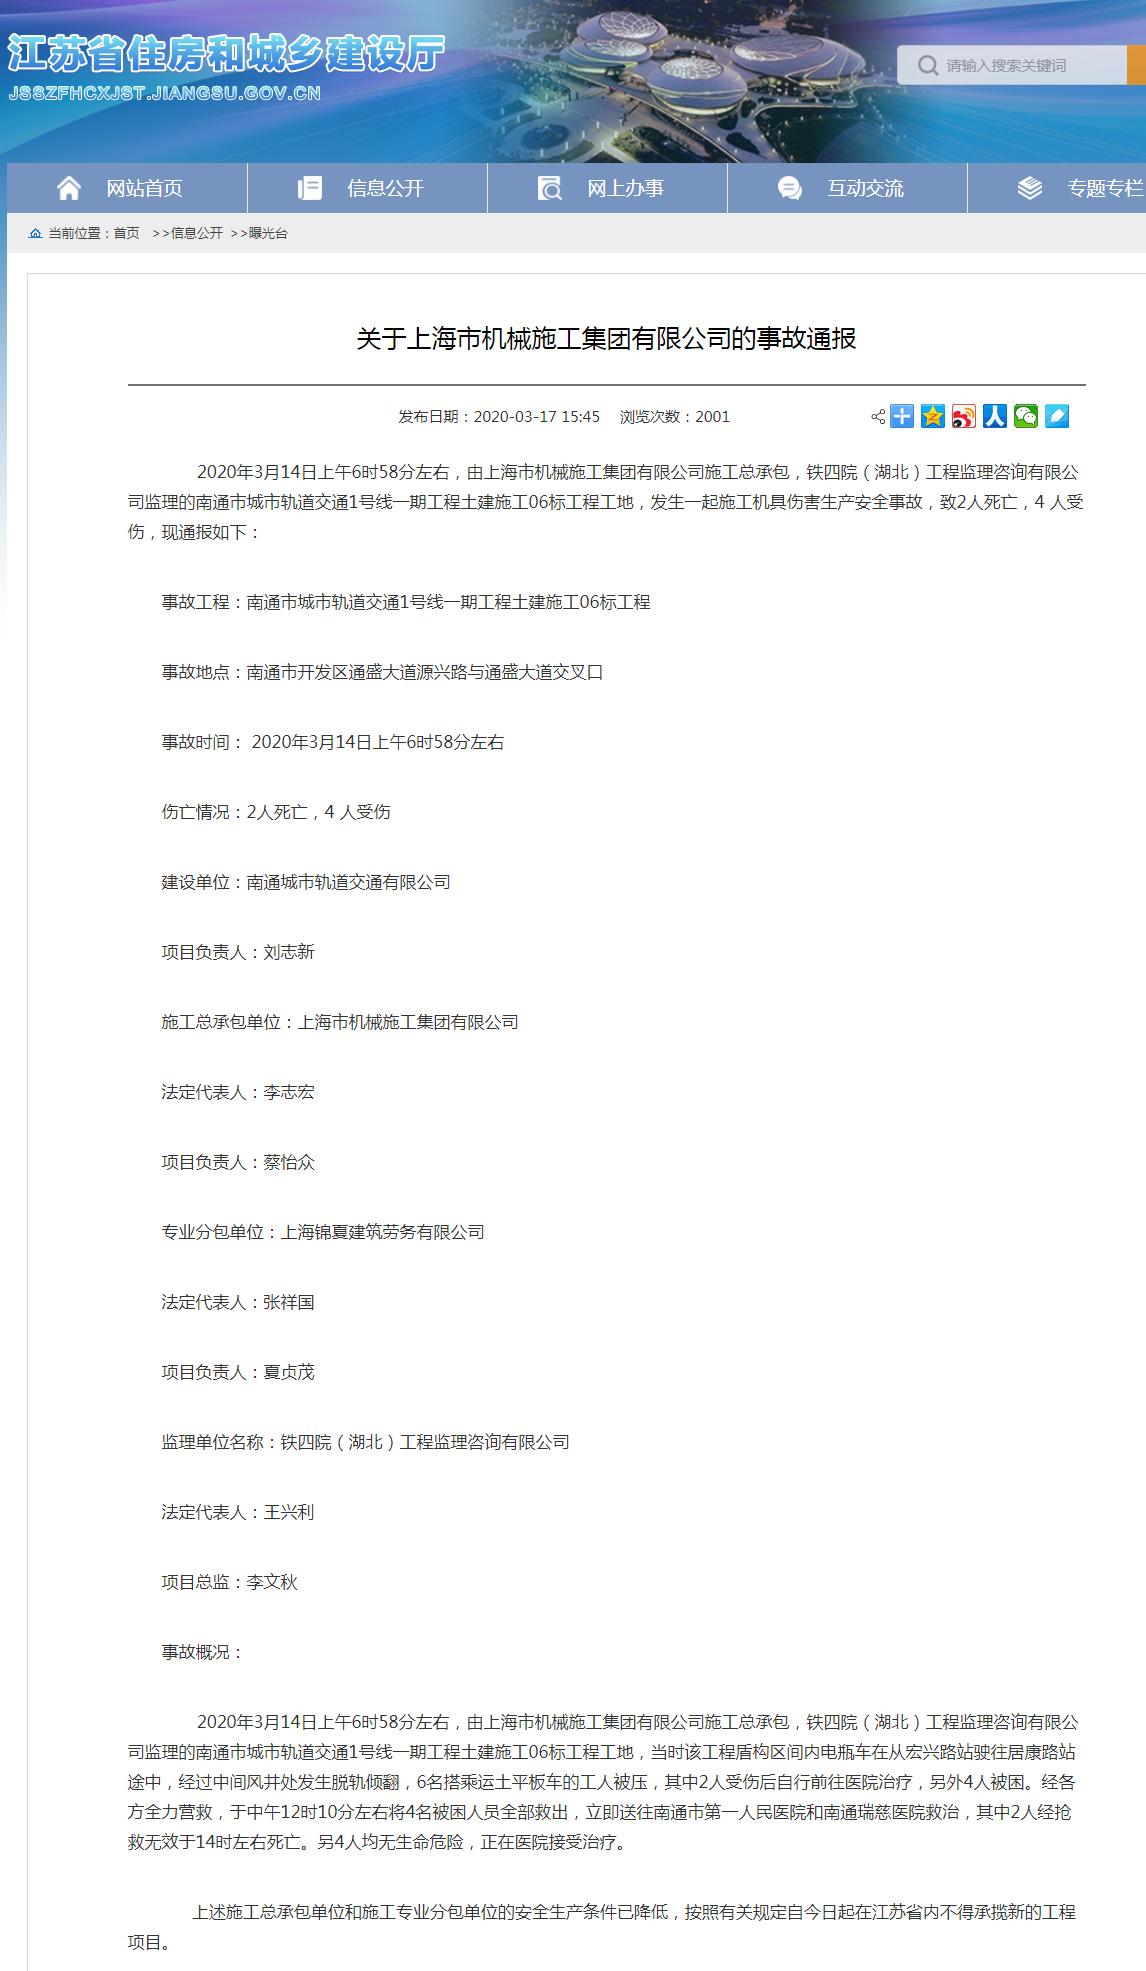 上海市机械施工集团有限公司南通市城市轨道交通1号线工程事故致2死4伤 被禁承揽新工程